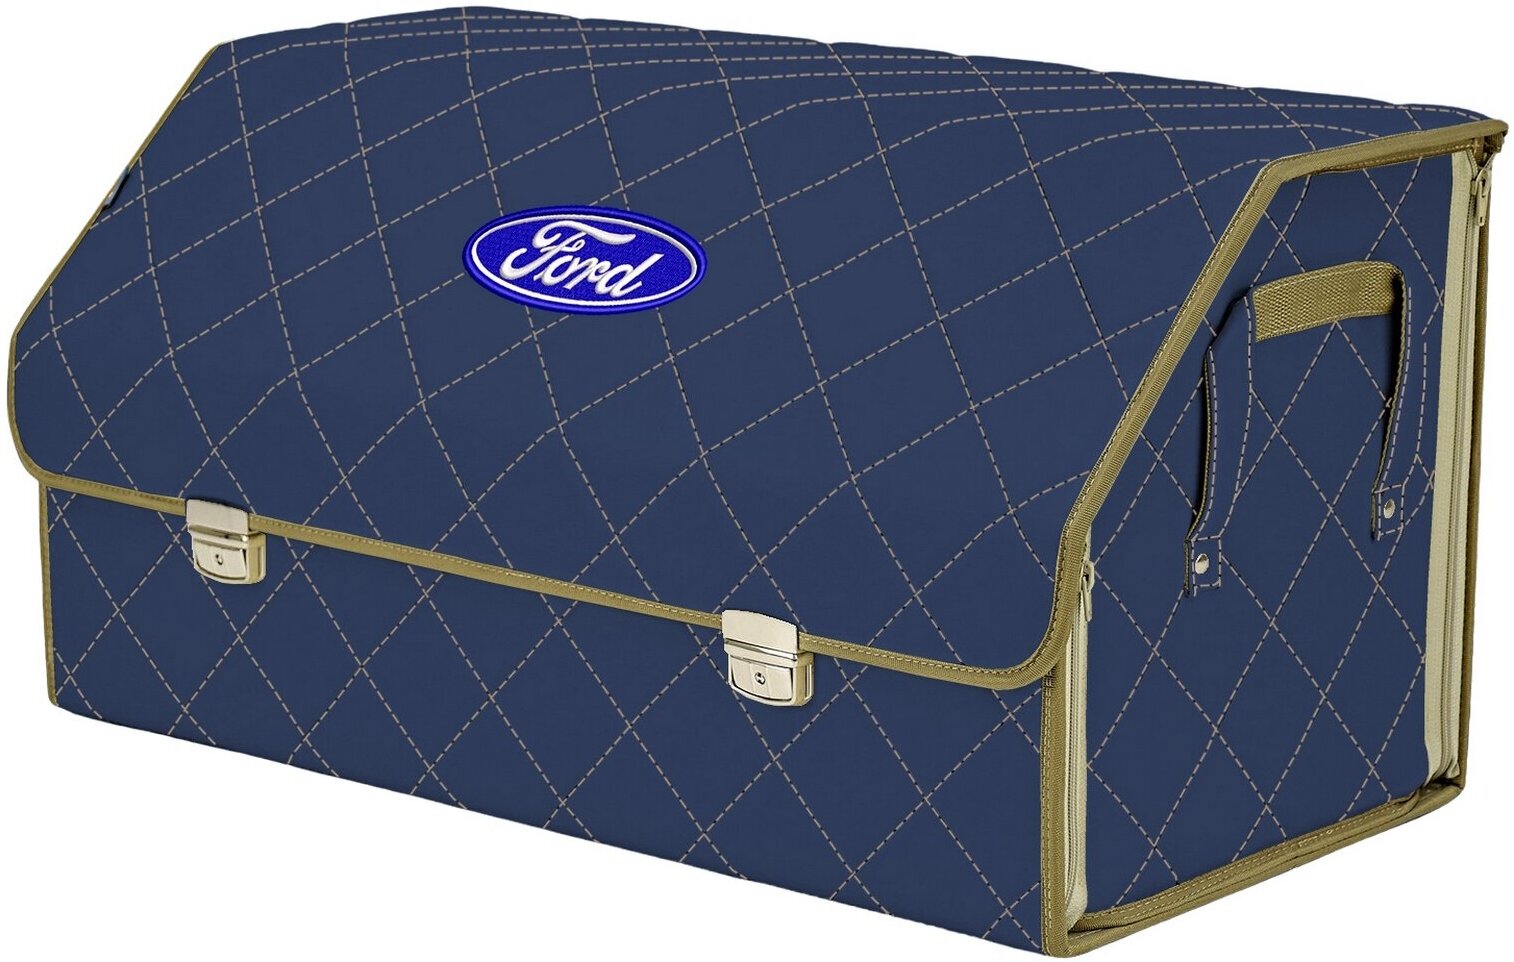 Органайзер-саквояж в багажник "Союз Премиум" (размер XL Plus). Цвет: синий с бежевой прострочкой Ромб и вышивкой Ford (Форд).